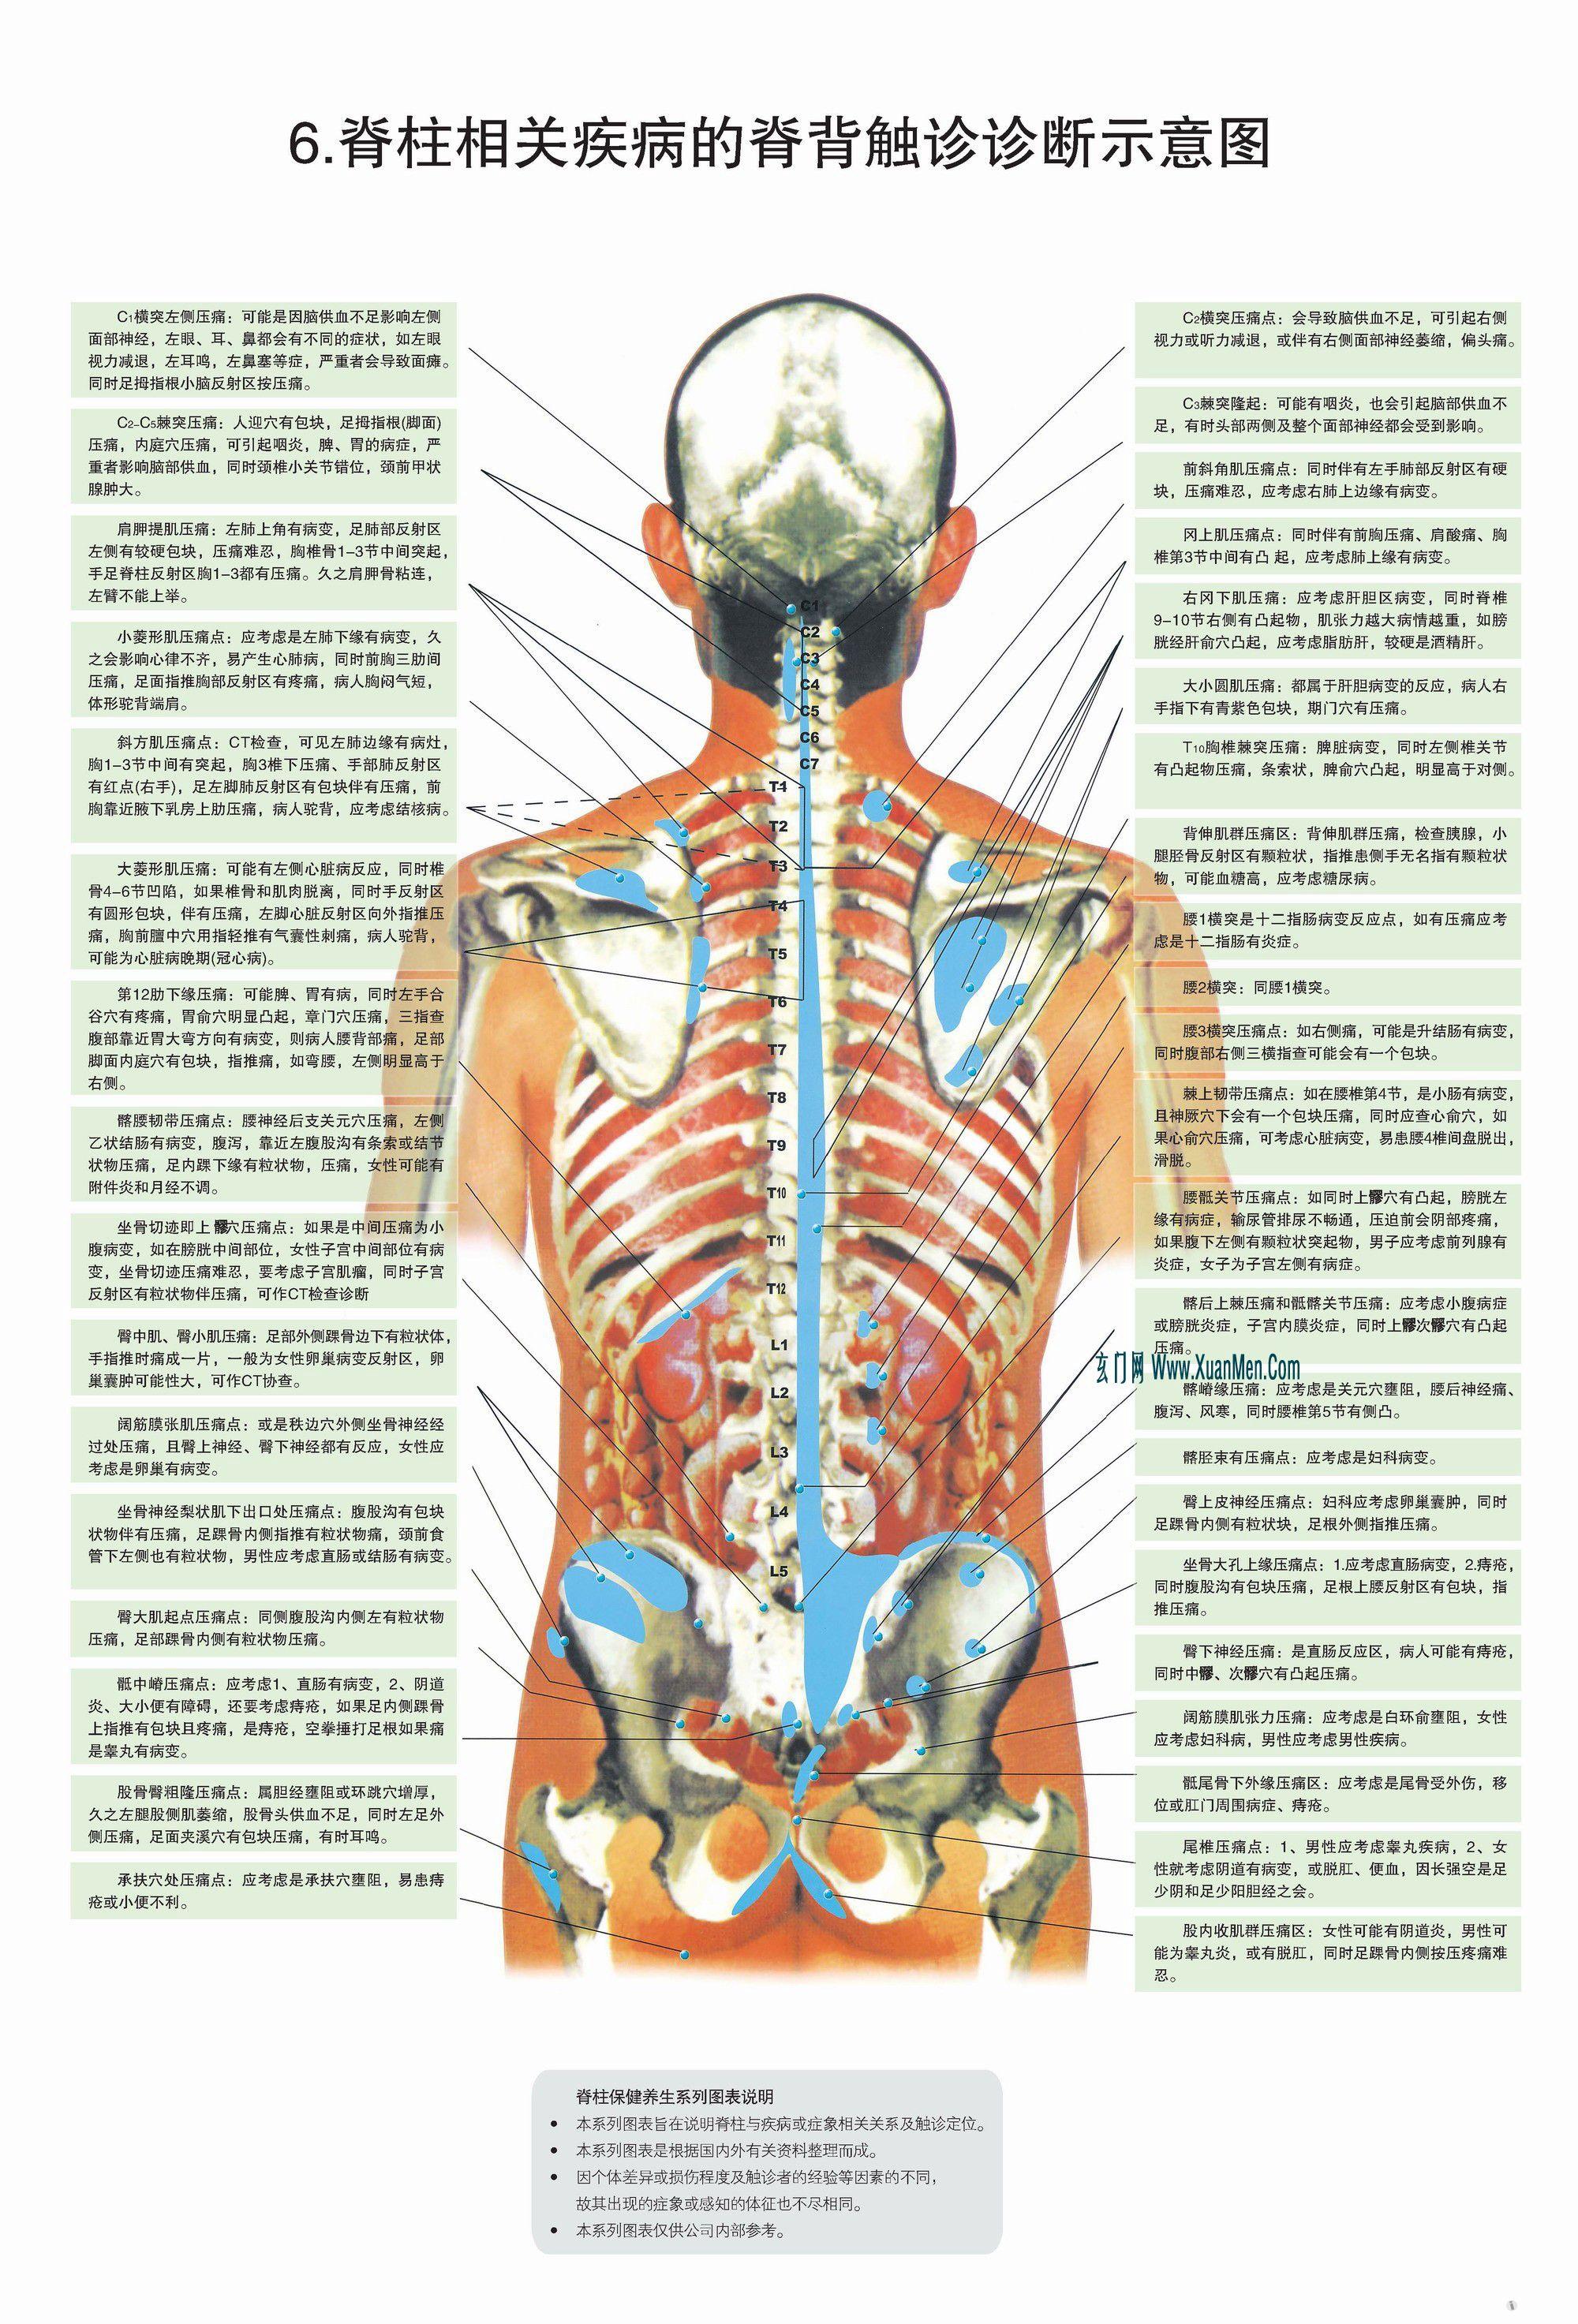 脊柱图解-整脊疗法(高清)